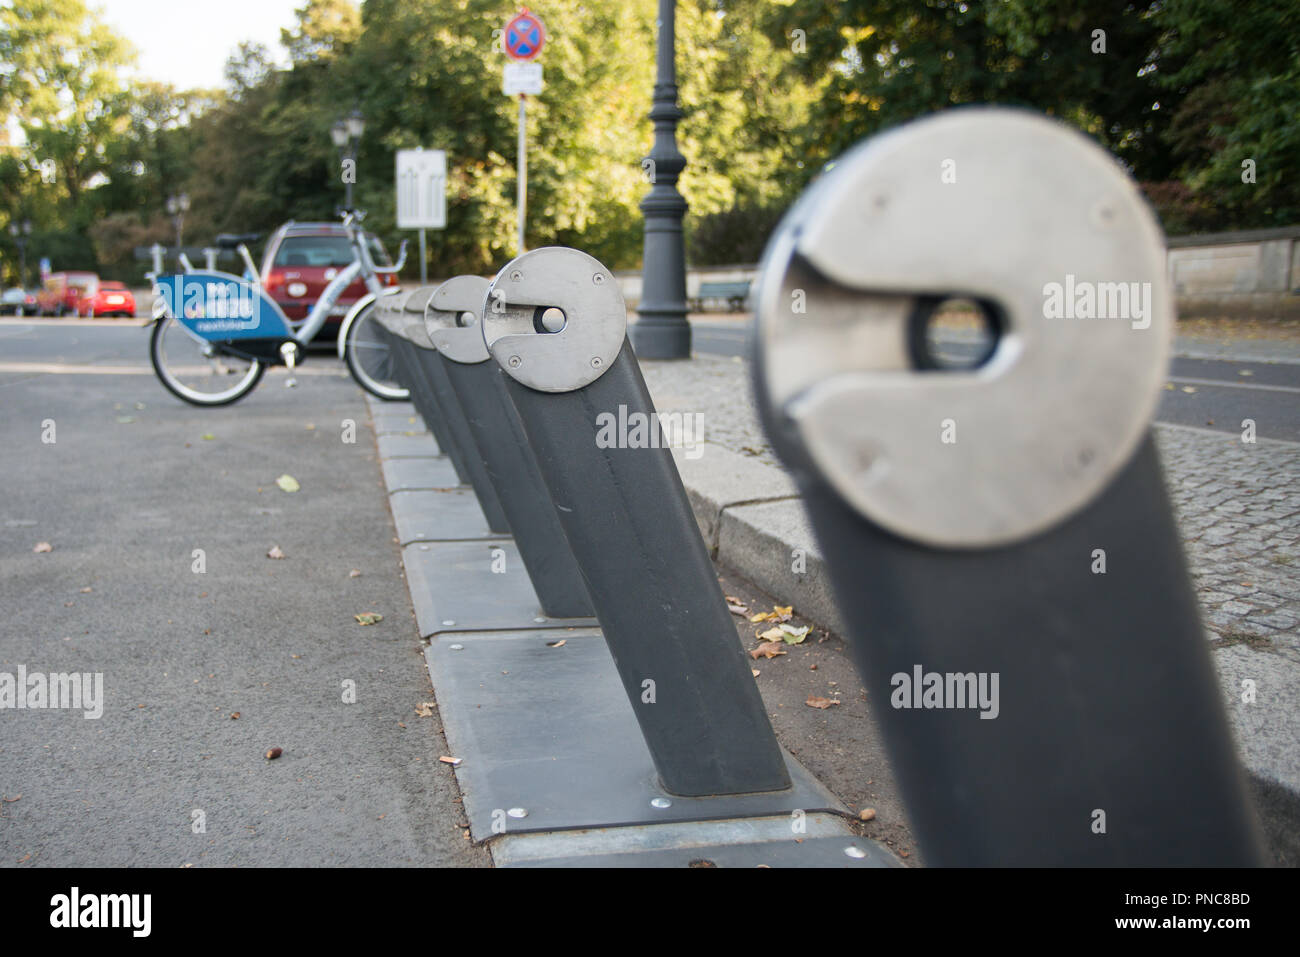 Leihrad ein Bike Sharing Station in Berlin. Stockfoto